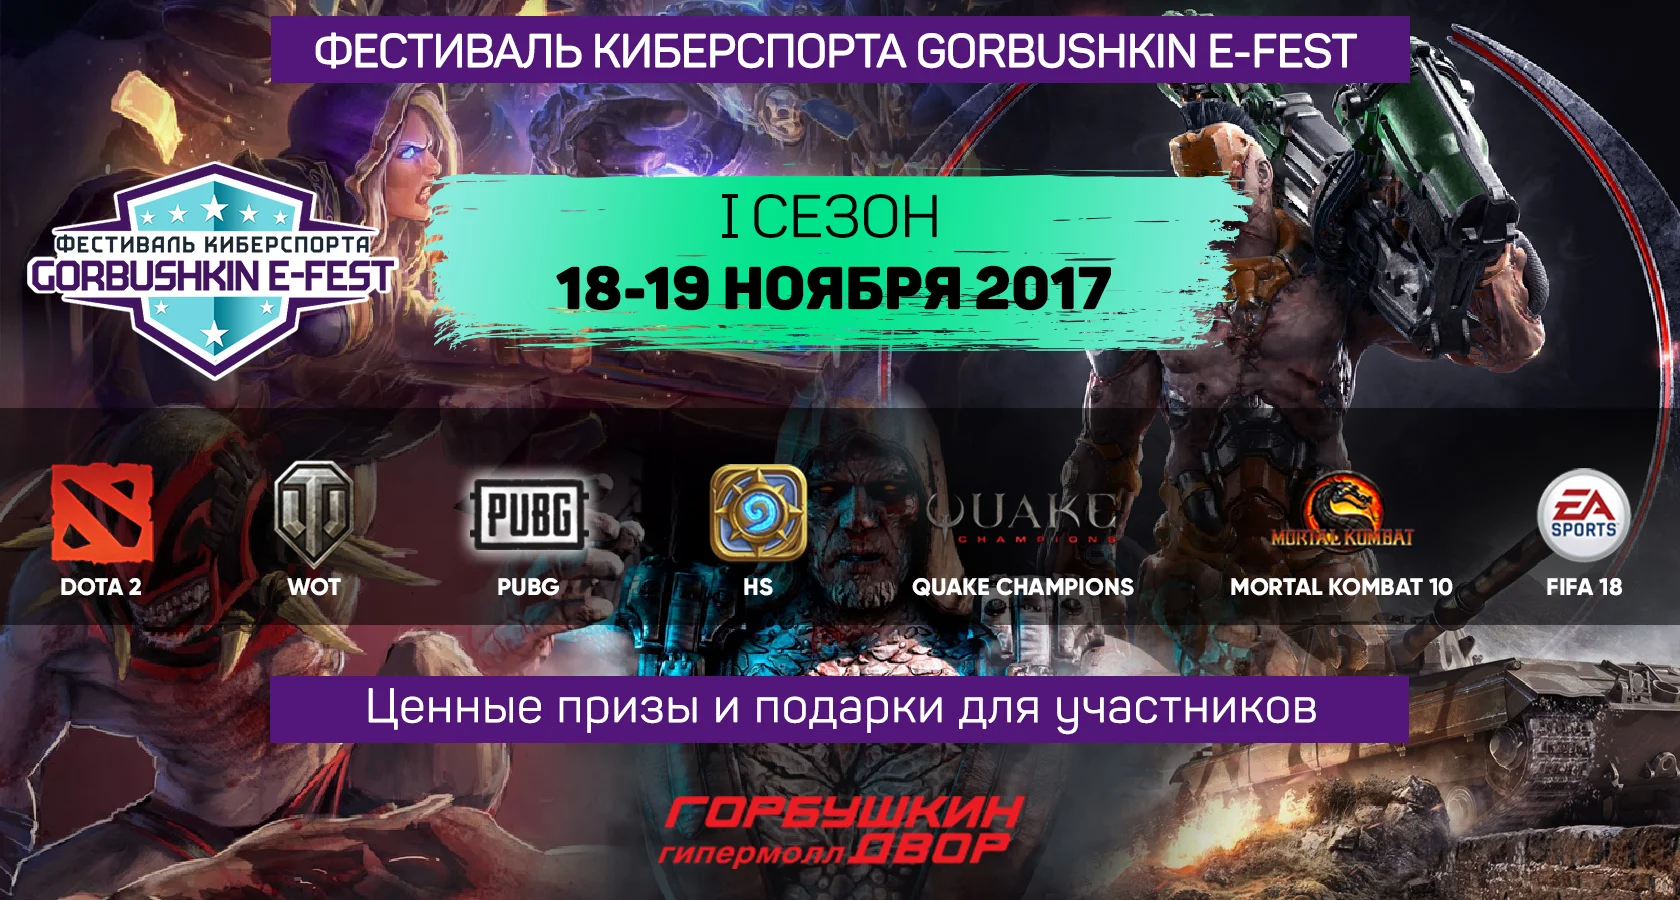 Как улетно провести выходные: фестиваль киберспорта в Москве - фото 2